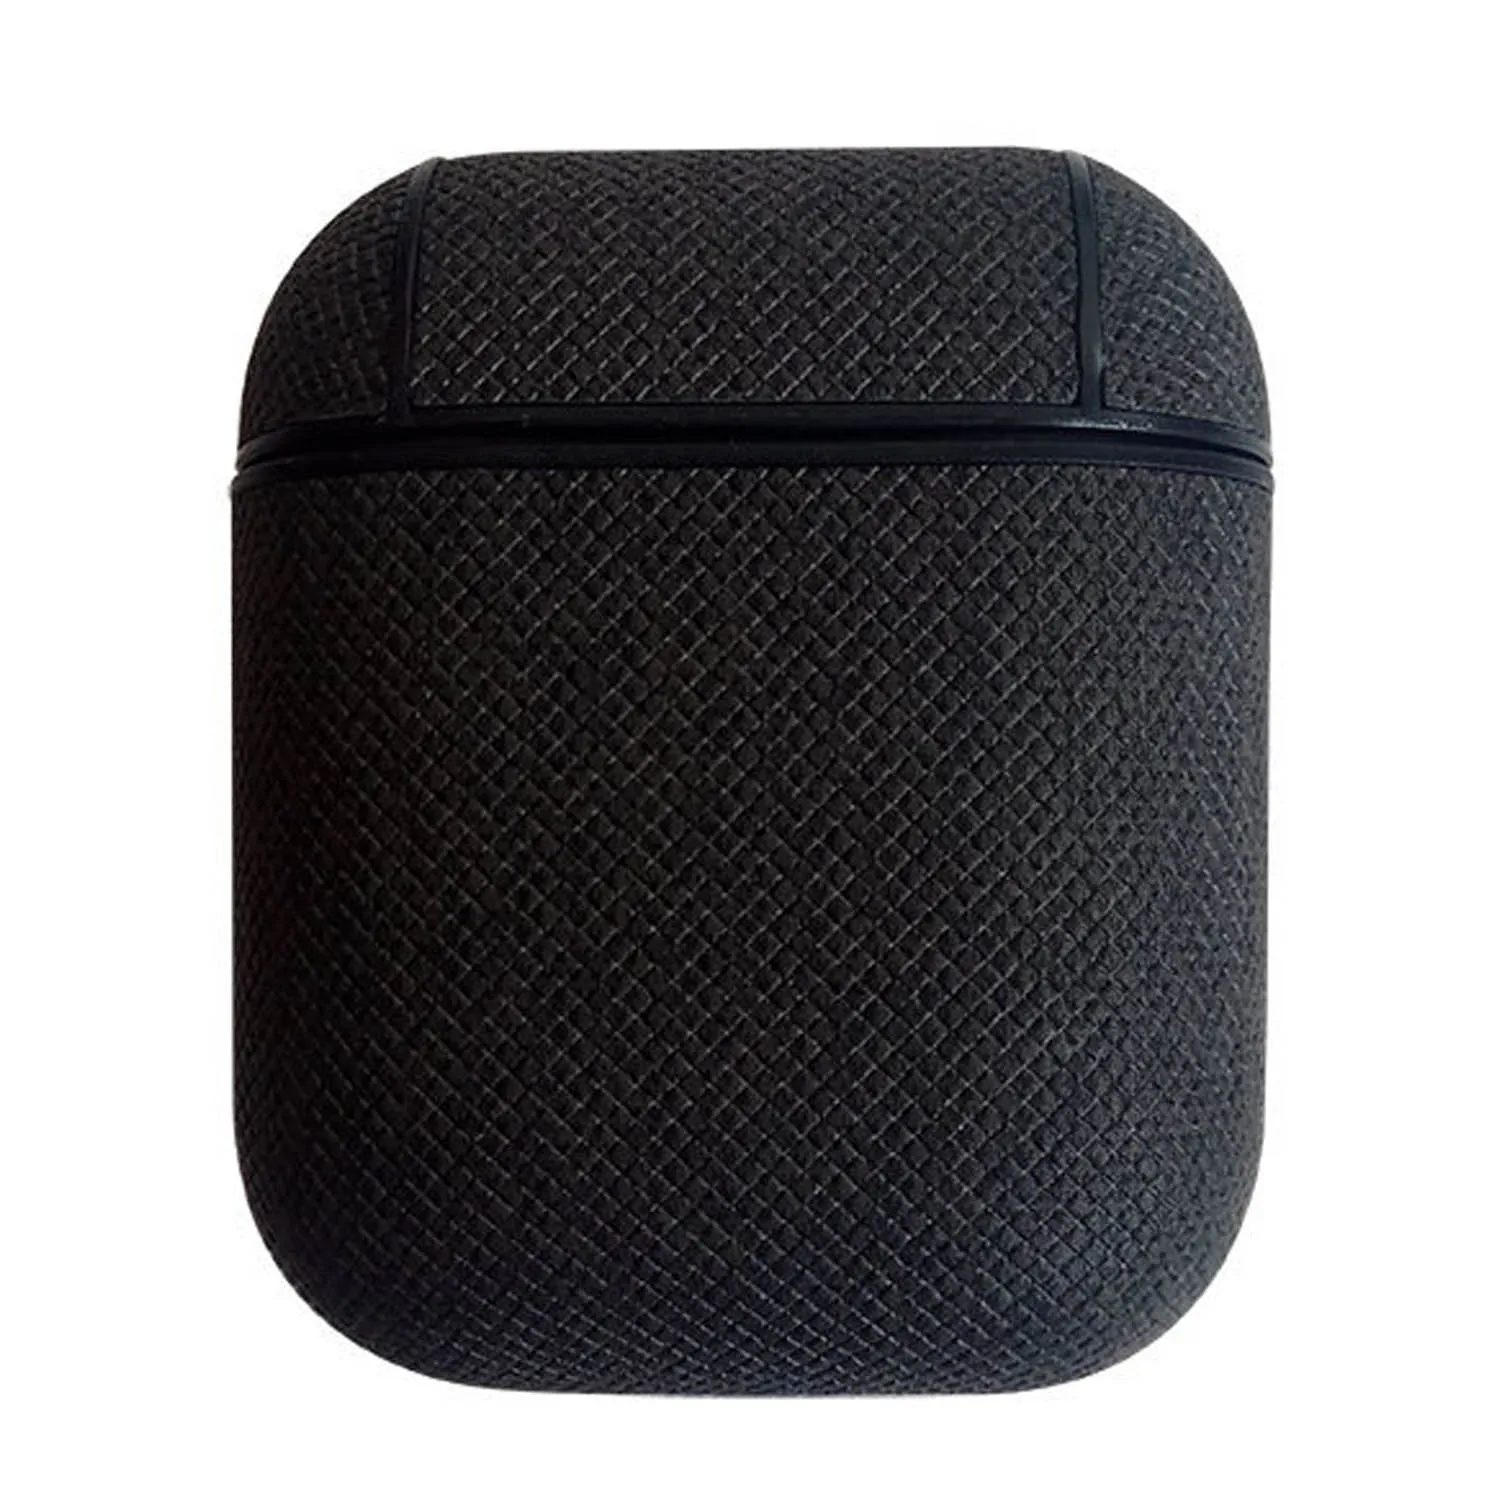 Besegad защитный чехол из искусственной кожи чехол с карабином для Apple AirPods Air Pods TWS беспроводные Bluetooth наушники - Цвет: Black